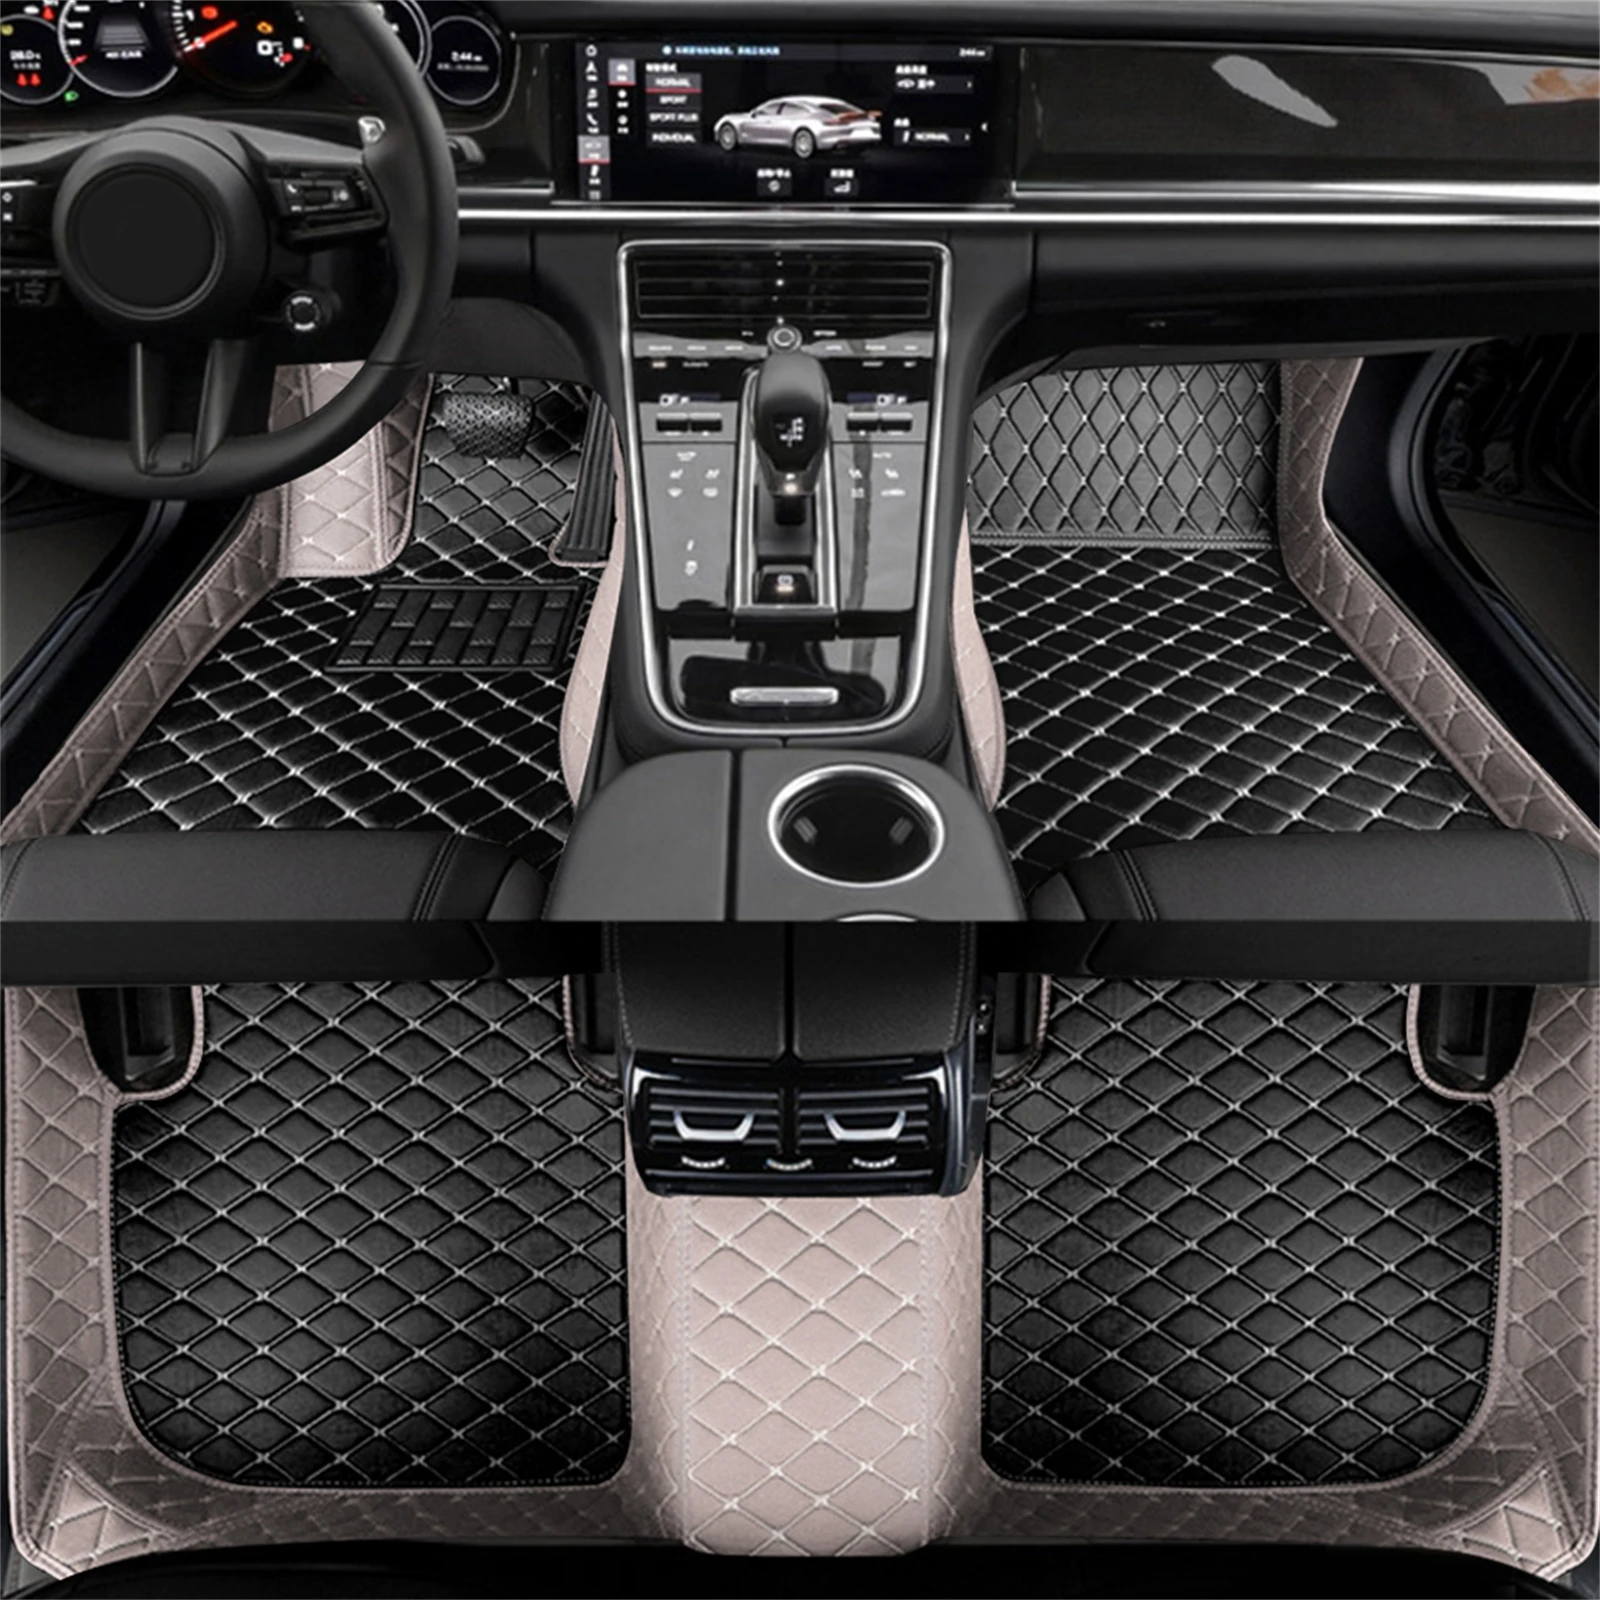 Artificial de Cuero de encargo del Coche alfombras de Piso para BMW F20 1 Serie de 4 Puertas 2011-2019 Año Detalles del Interior de los Accesorios del Coche de la Alfombra Imagen 1